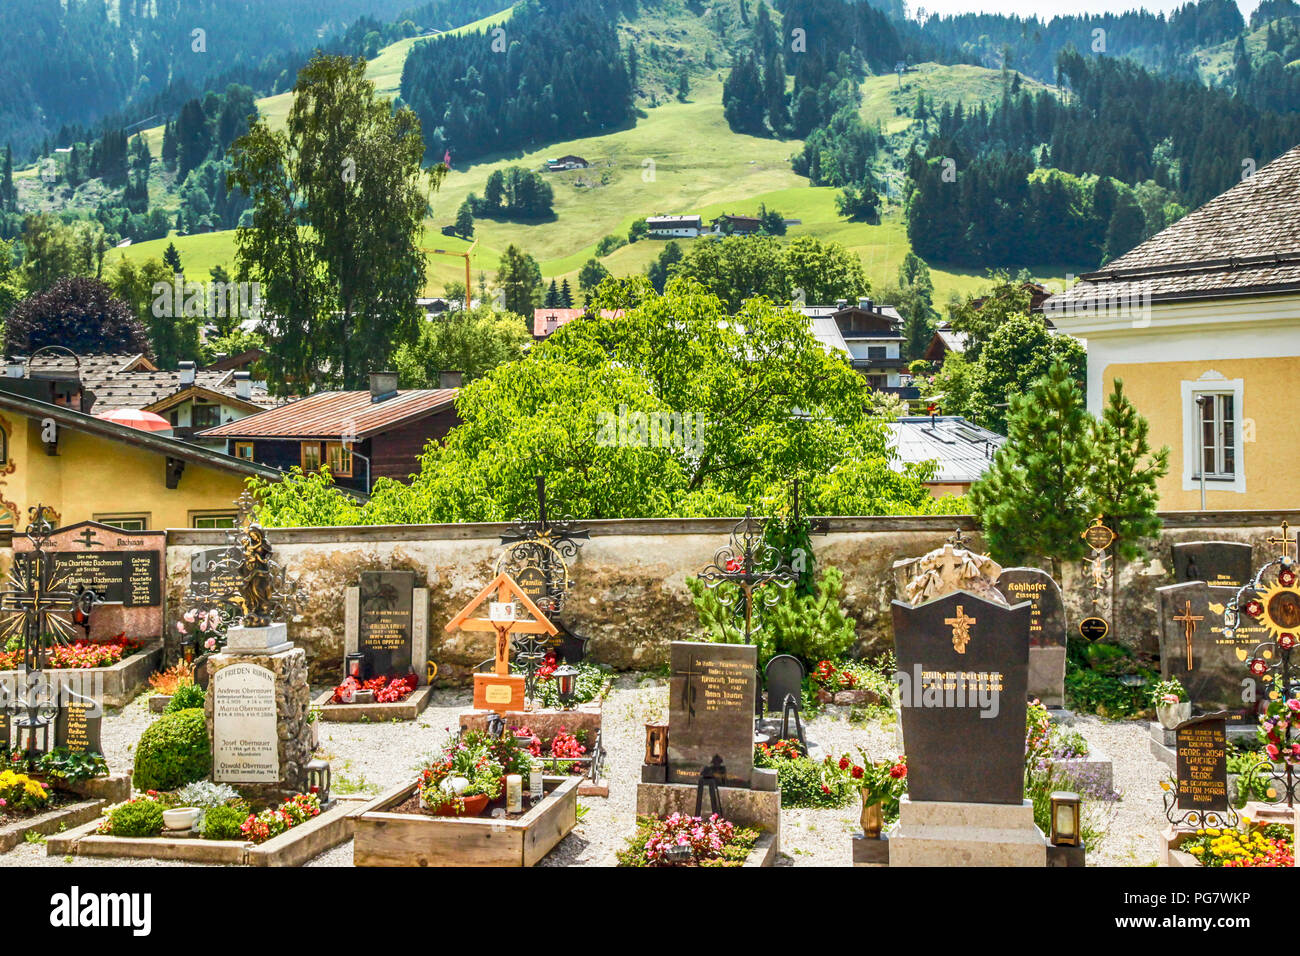 Un beau cimetière donnant sur une prairie alpine à Kitzbuhel, Autriche Banque D'Images